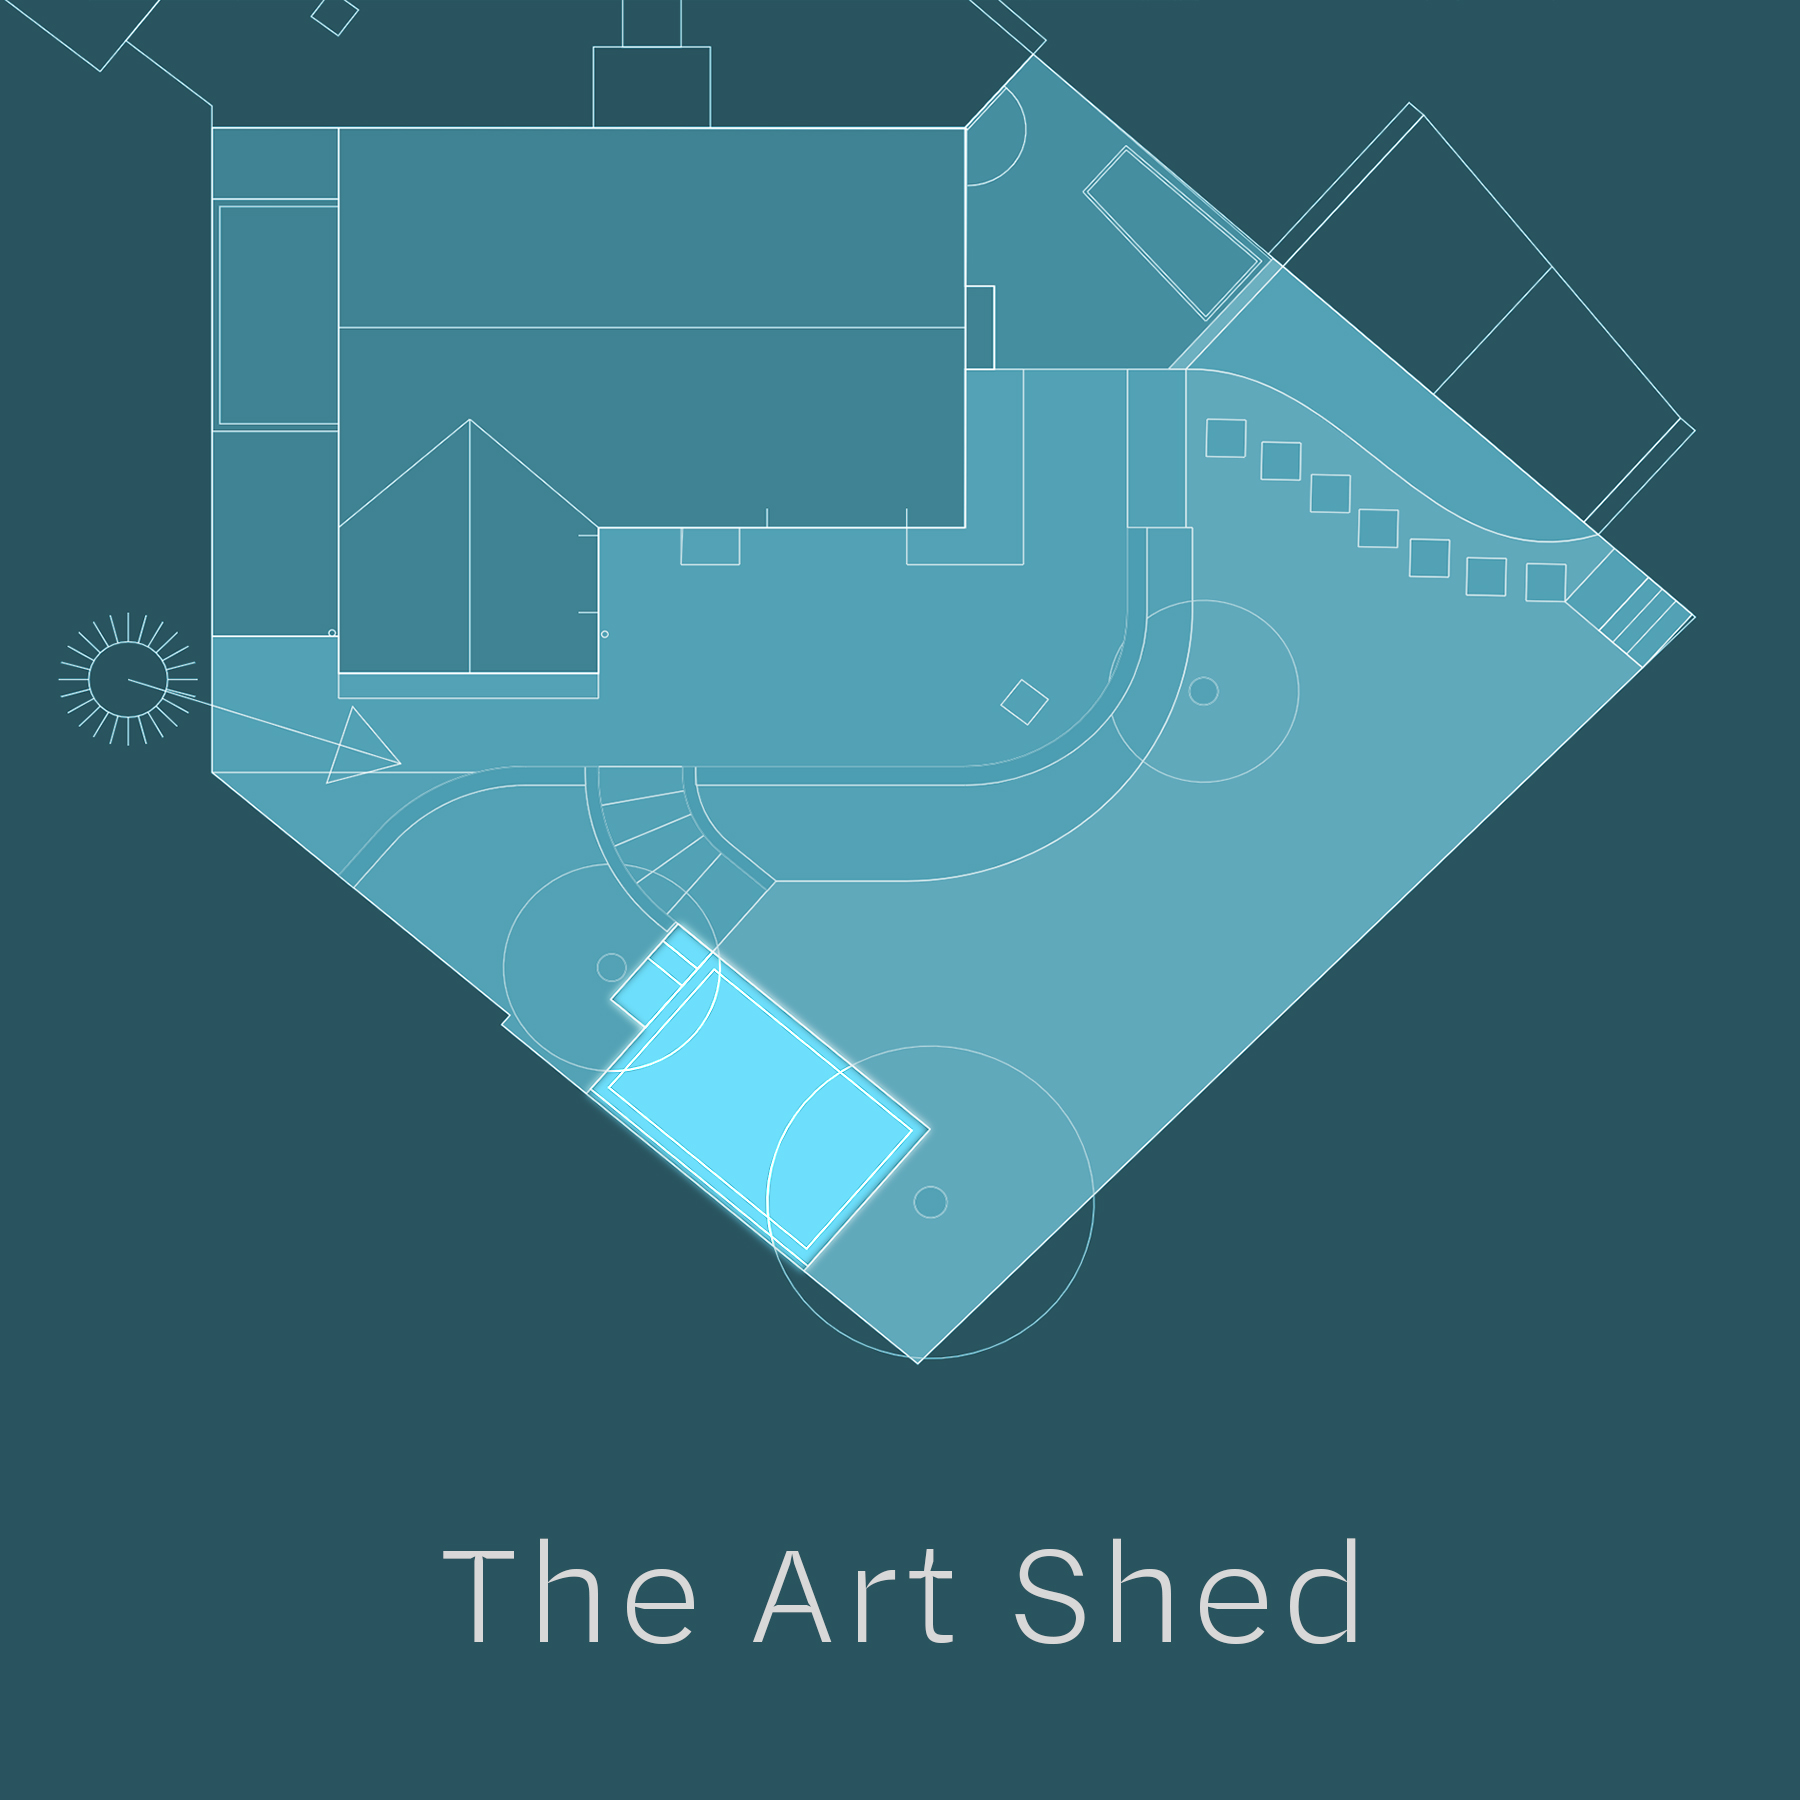 Art shed plan drawing